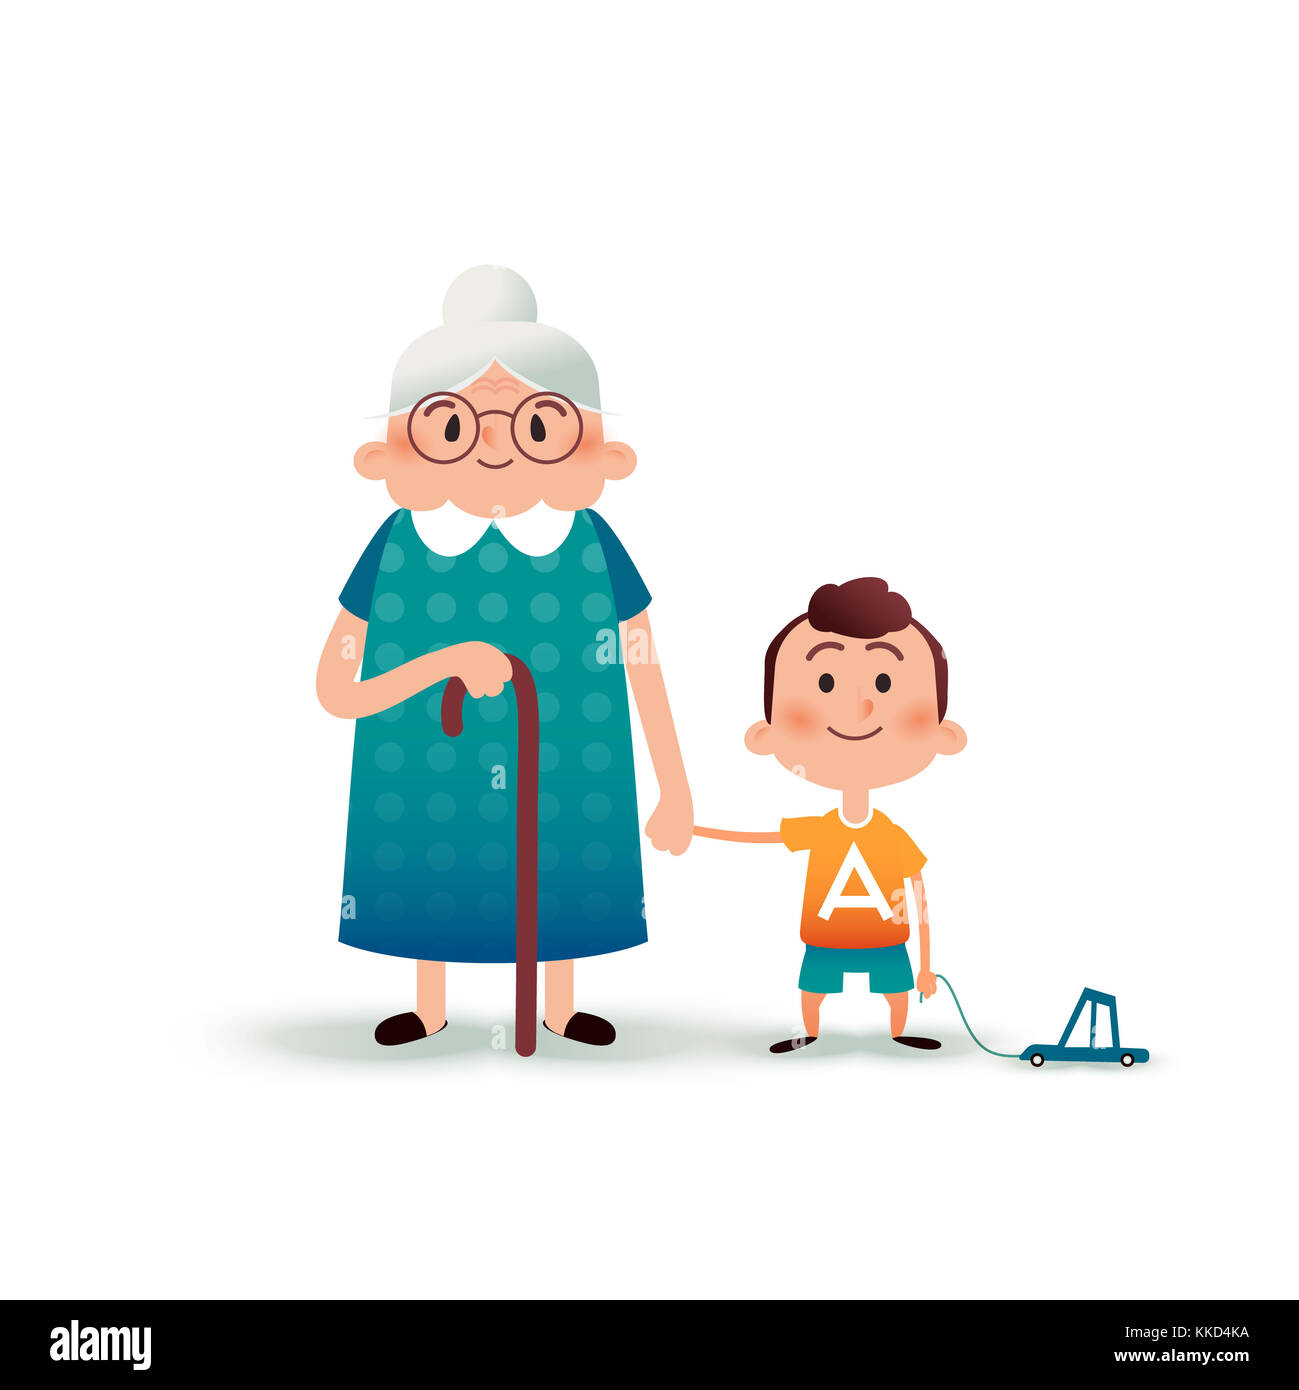 Großmutter und Enkel halten sich die Hände. Kleiner Junge mit einem Spielzeugauto und einer alten Frau Cartoon-Illustration. Glückliches Familienkonzept. Flache Cartoon-Abbildung Stockfoto